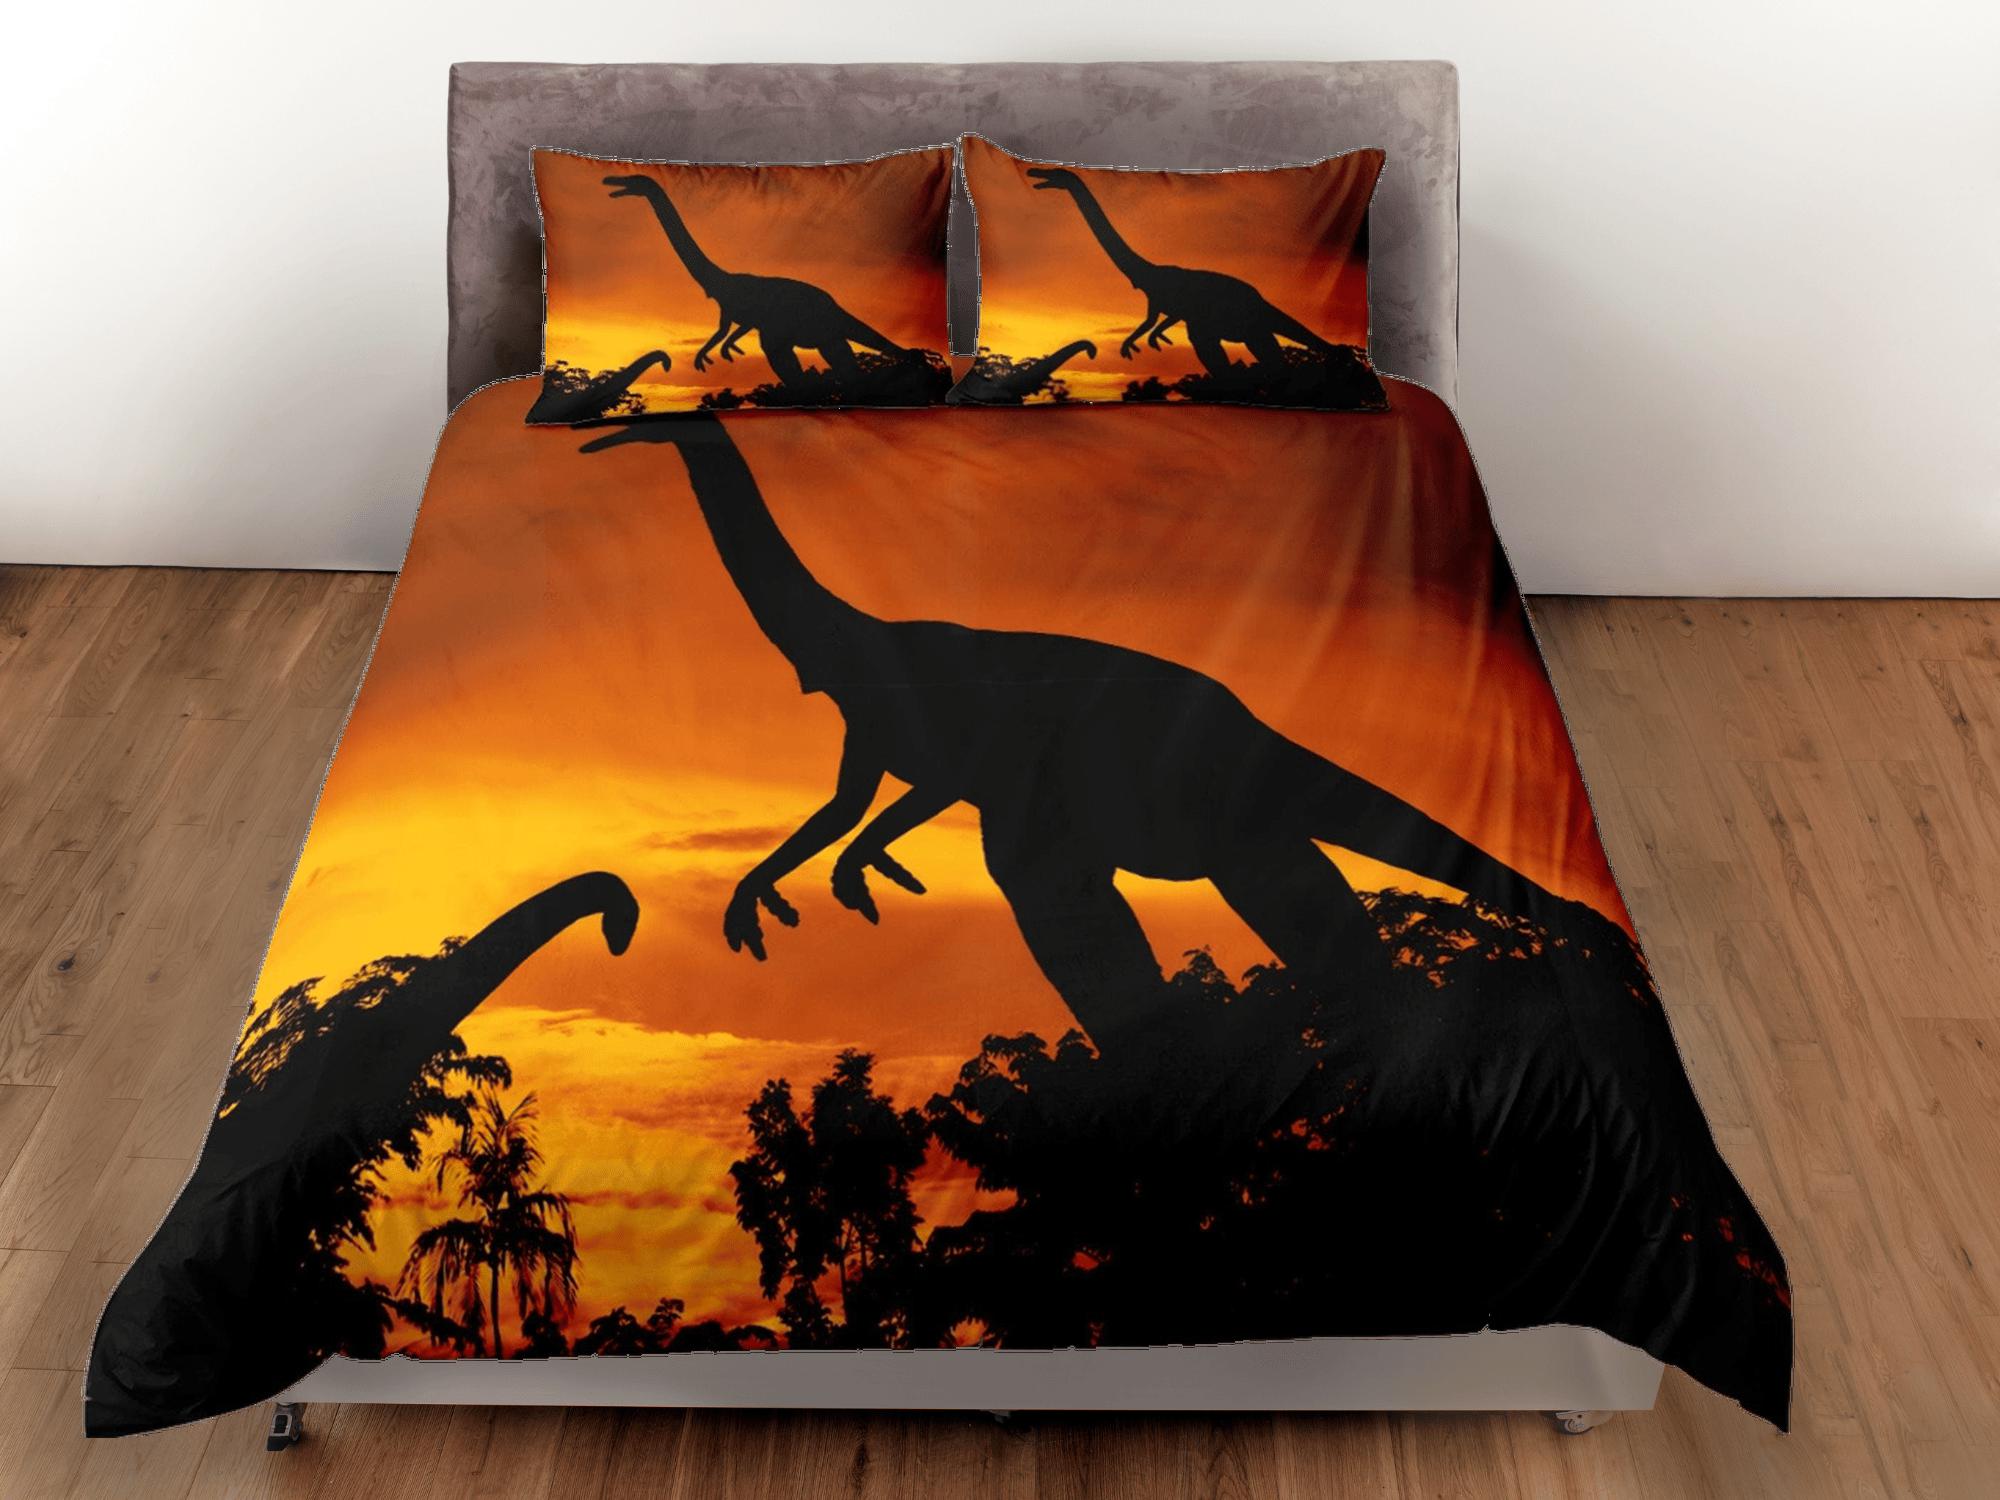 daintyduvet Diplodocus dinosaur orange bedding, adult duvet cover, dorm bedding, teen boys bedding set full, animal duvet cover set, dinosaur gift